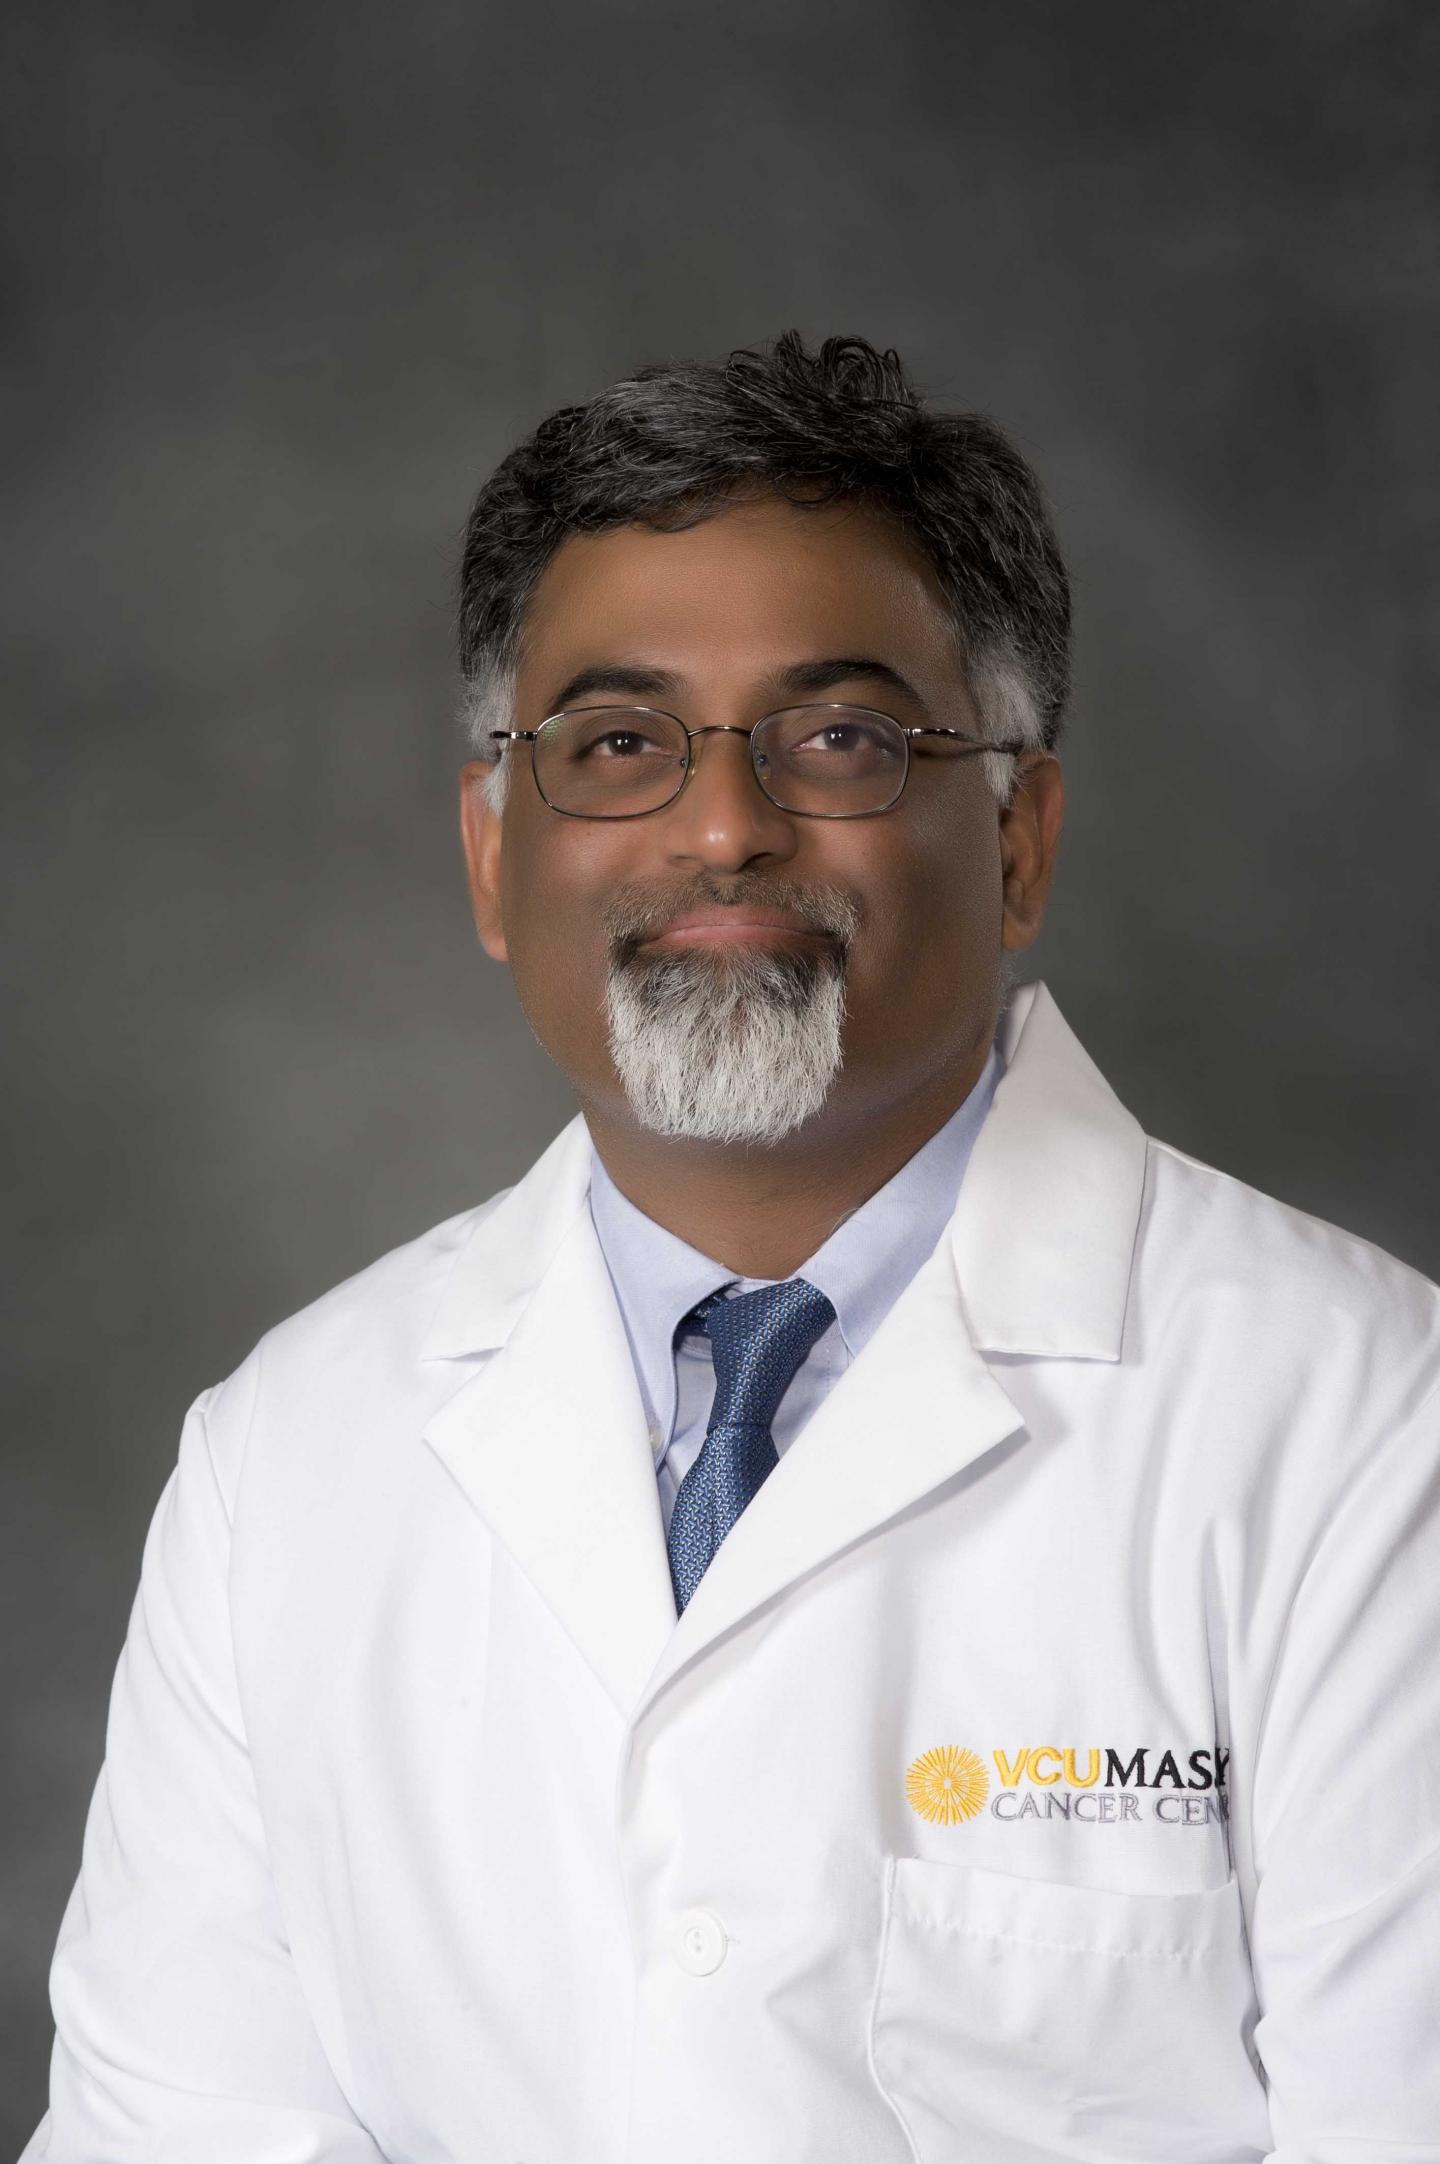 Amir Toor, M.D., VCU Massey Cancer Center